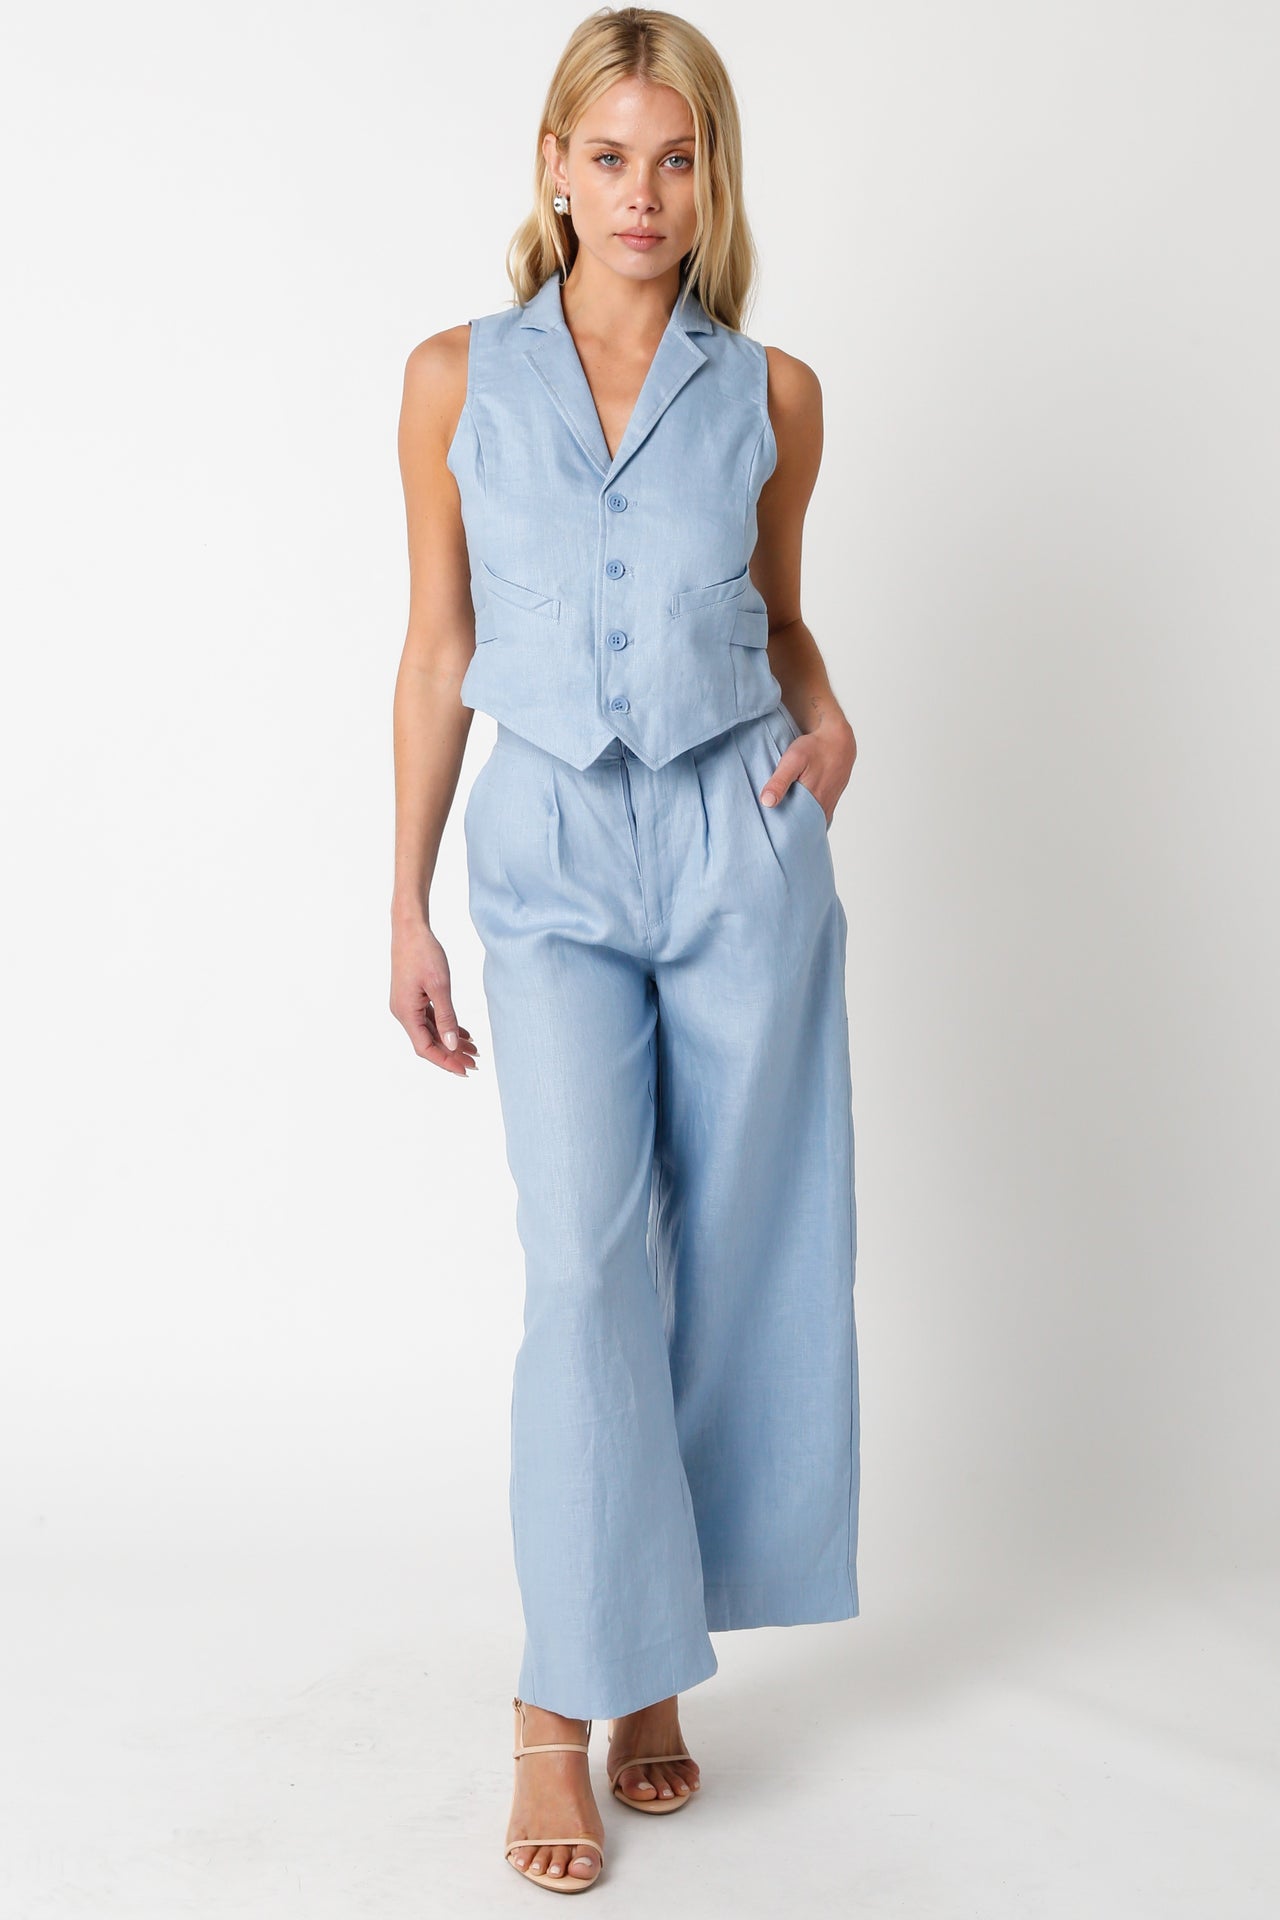 Make It Count Pants Blue, Pant Bottom by Olivaceous | LIT Boutique